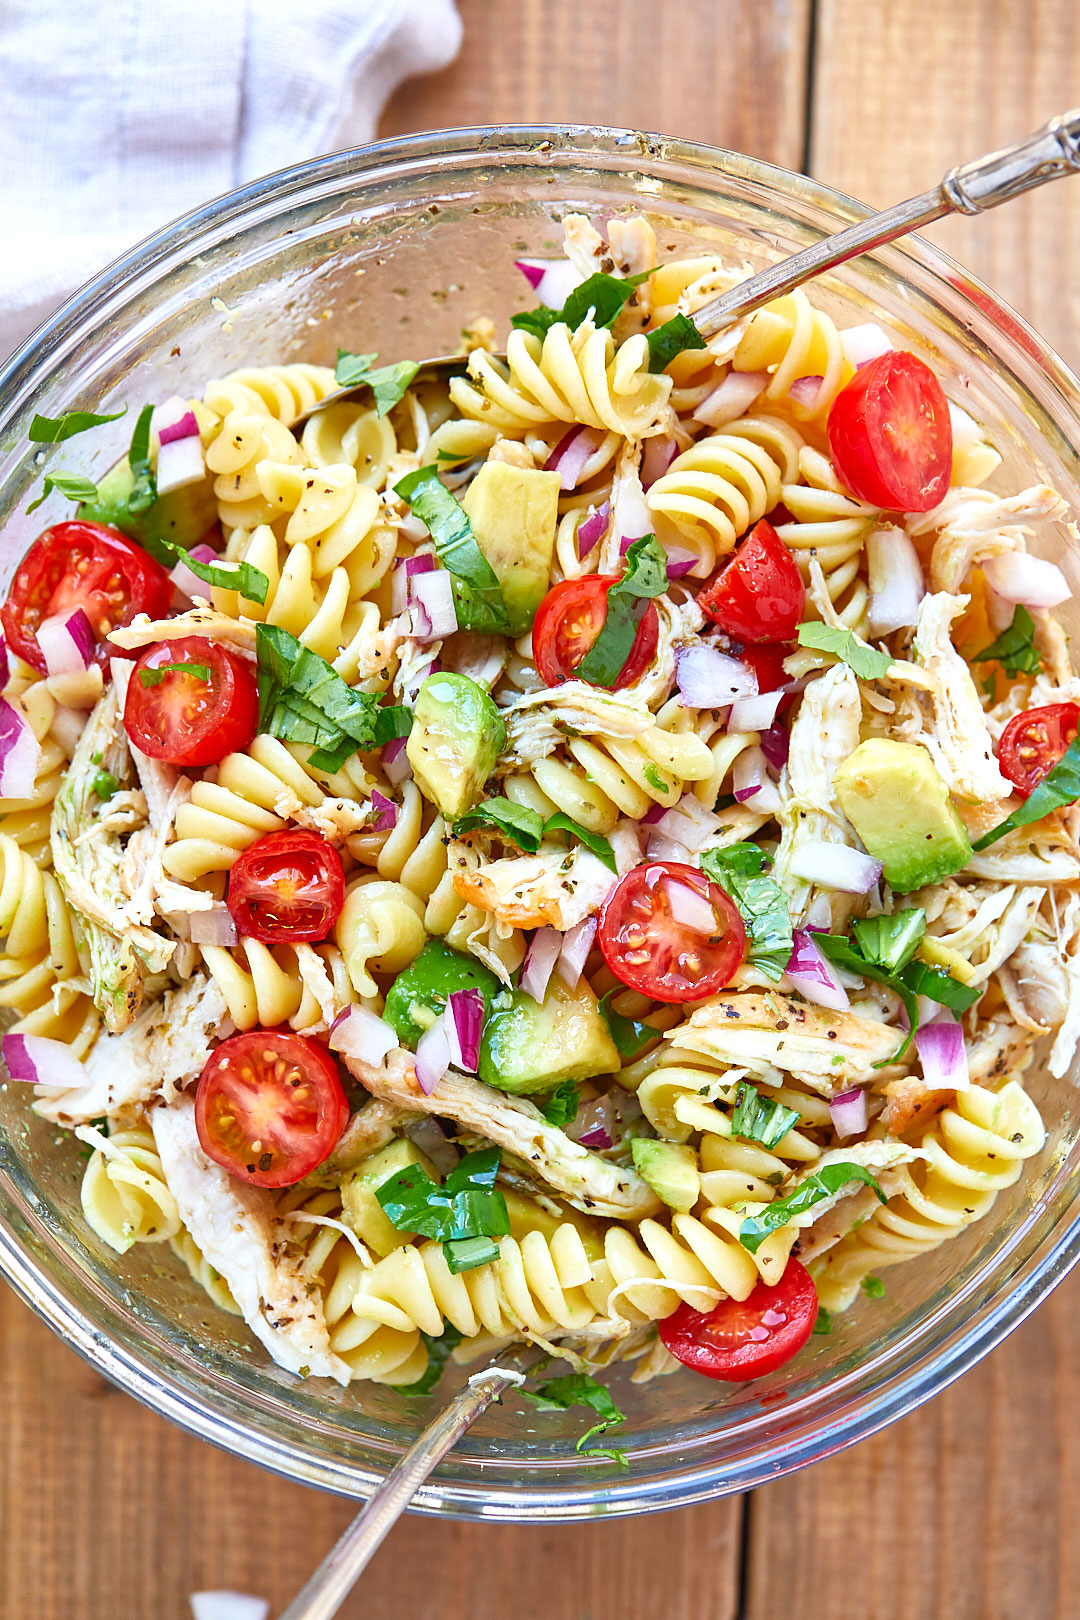 Healthy Chicken Pasta Salad Recipe with Avocado – Chicken Pasta Salad Recipe  — Eatwell101